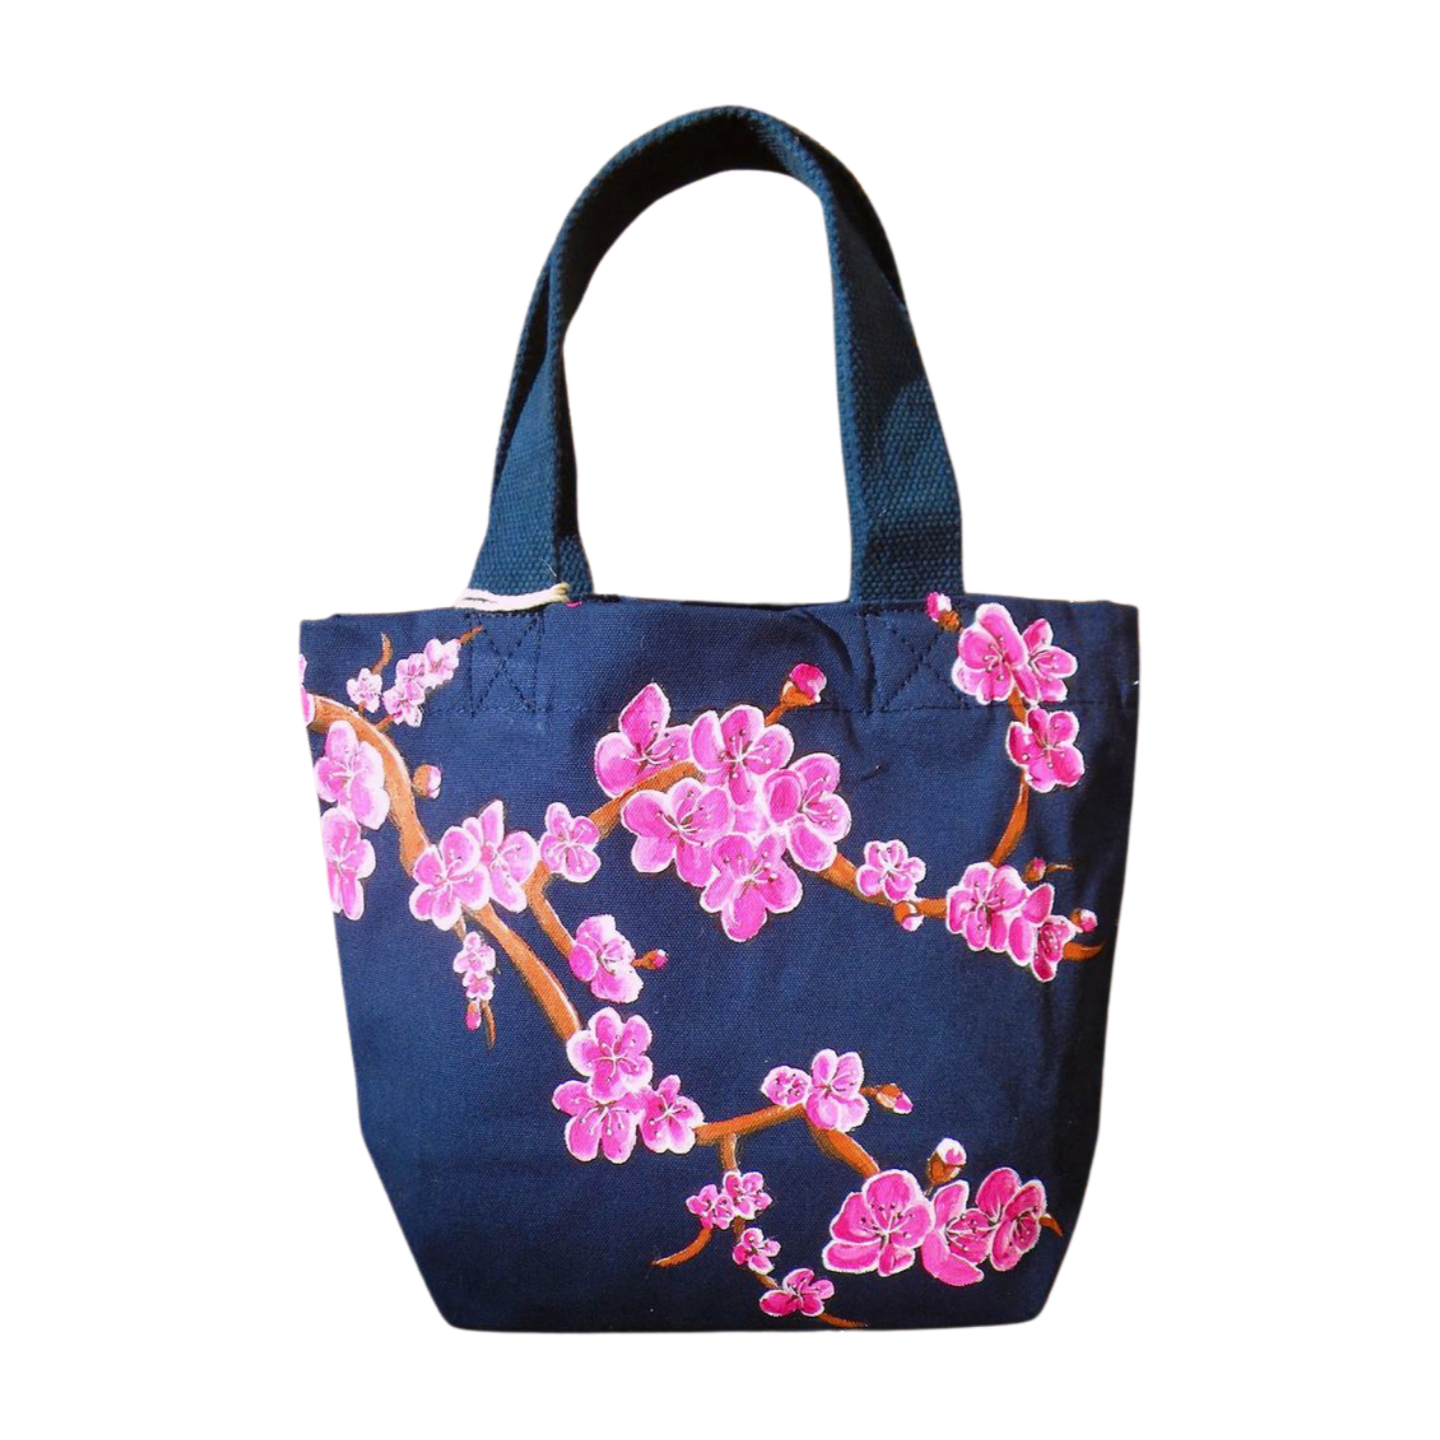 Petit sac en coton bio bleu marine avec fleurs de cerisiers peints à la main